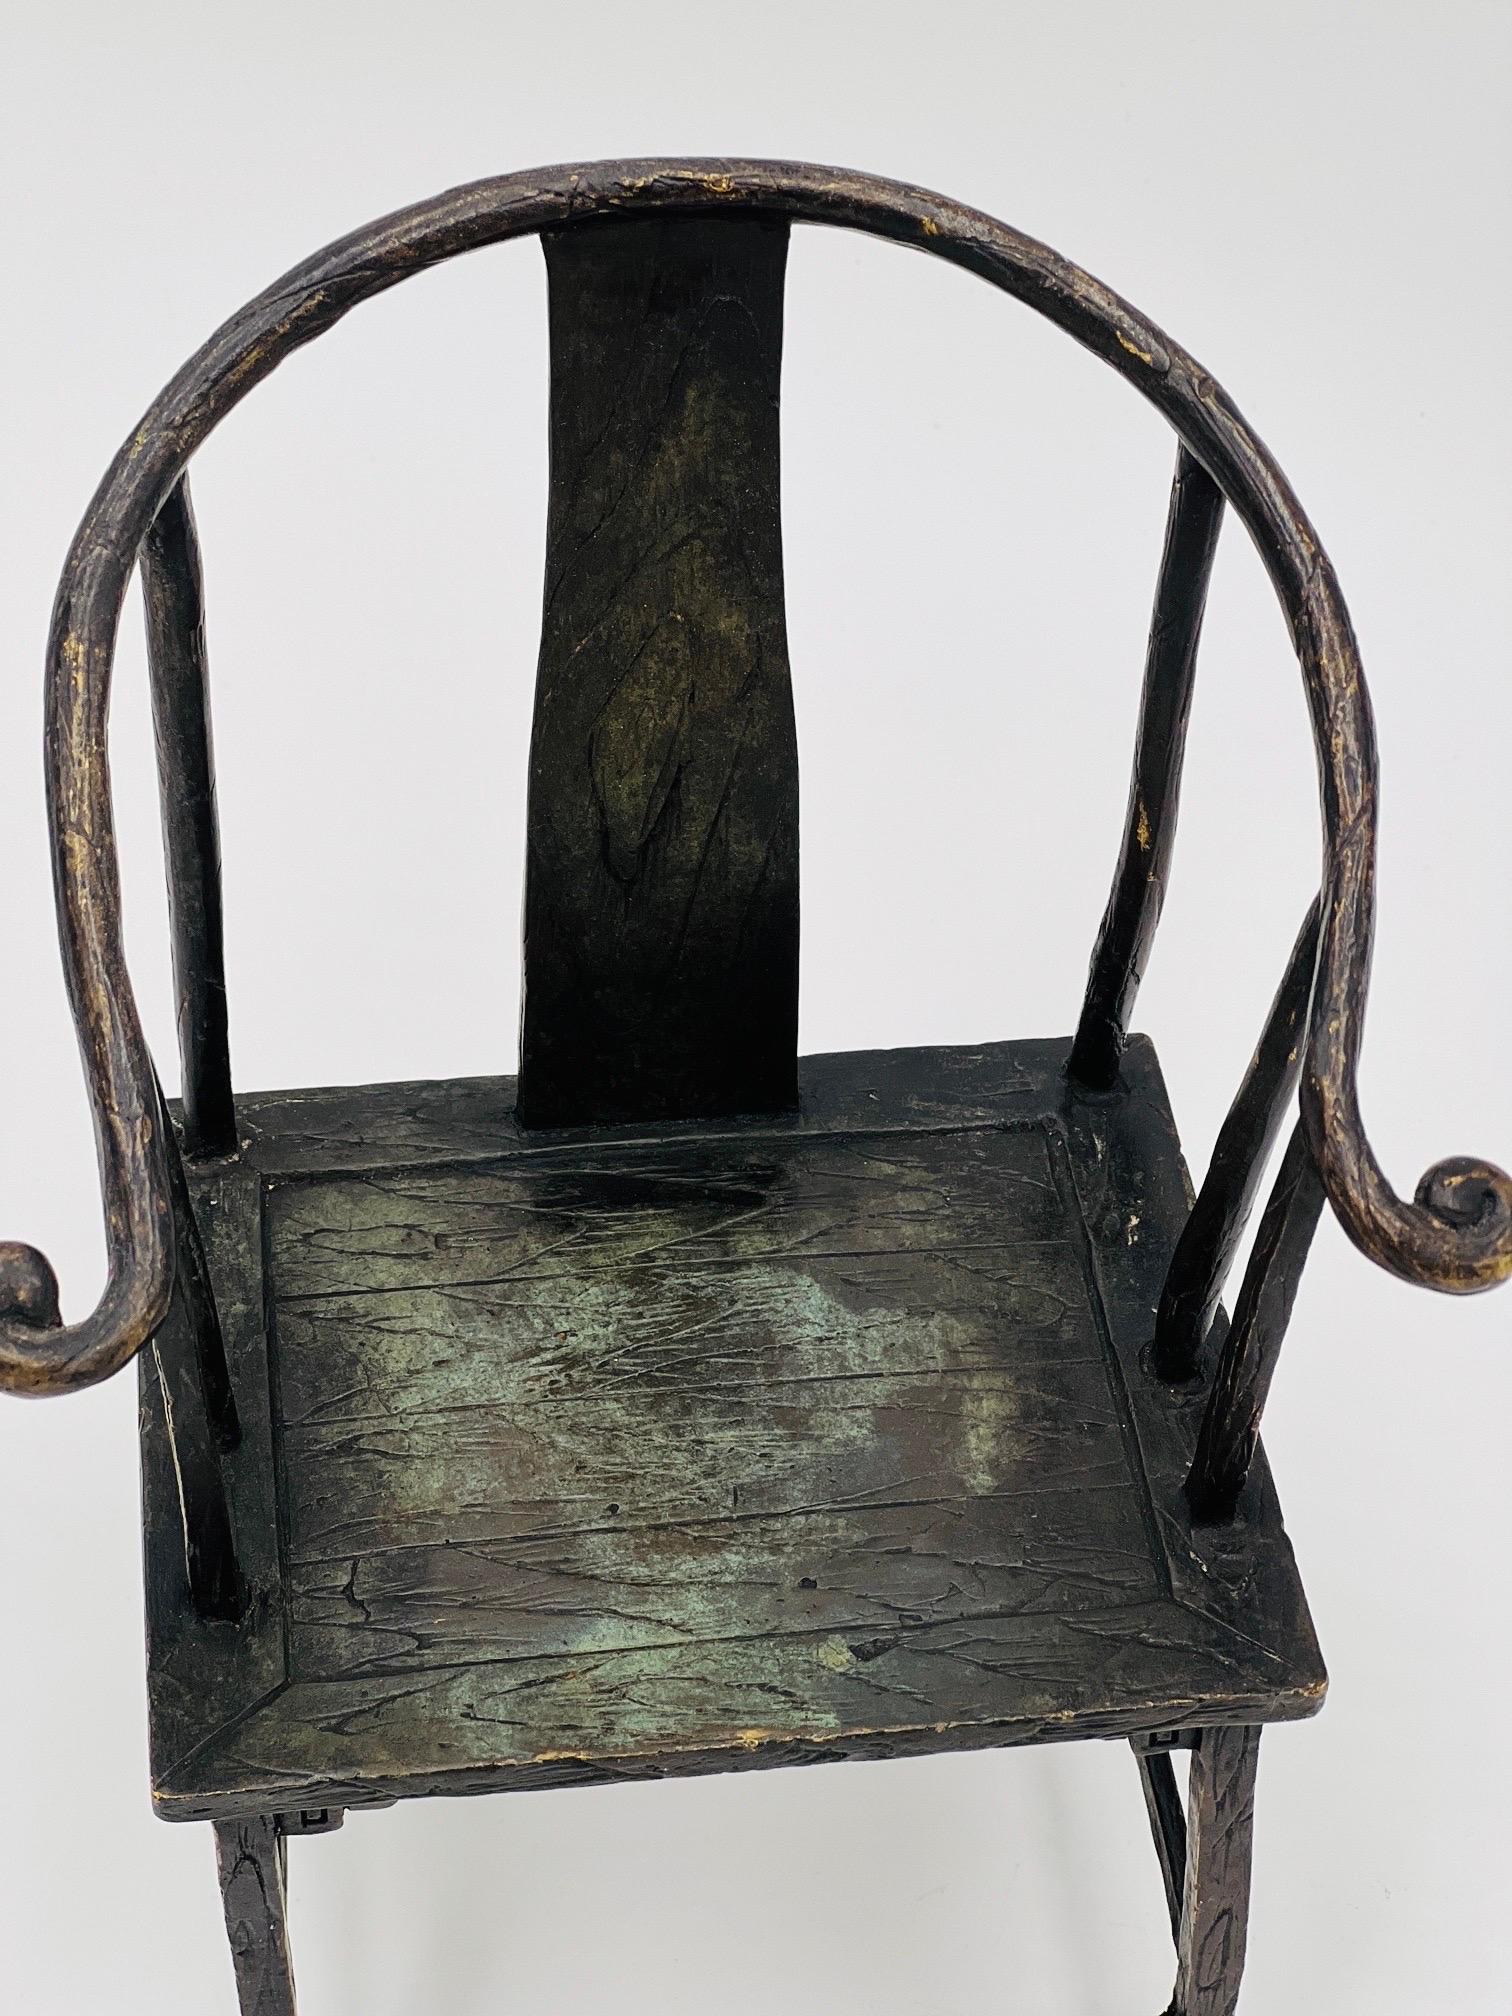 Sculpture contemporaine en bronze d'une chaise chinoise en forme de fer à cheval, construite en bronze avec une surface patinée. Marqué au dos du cadre 